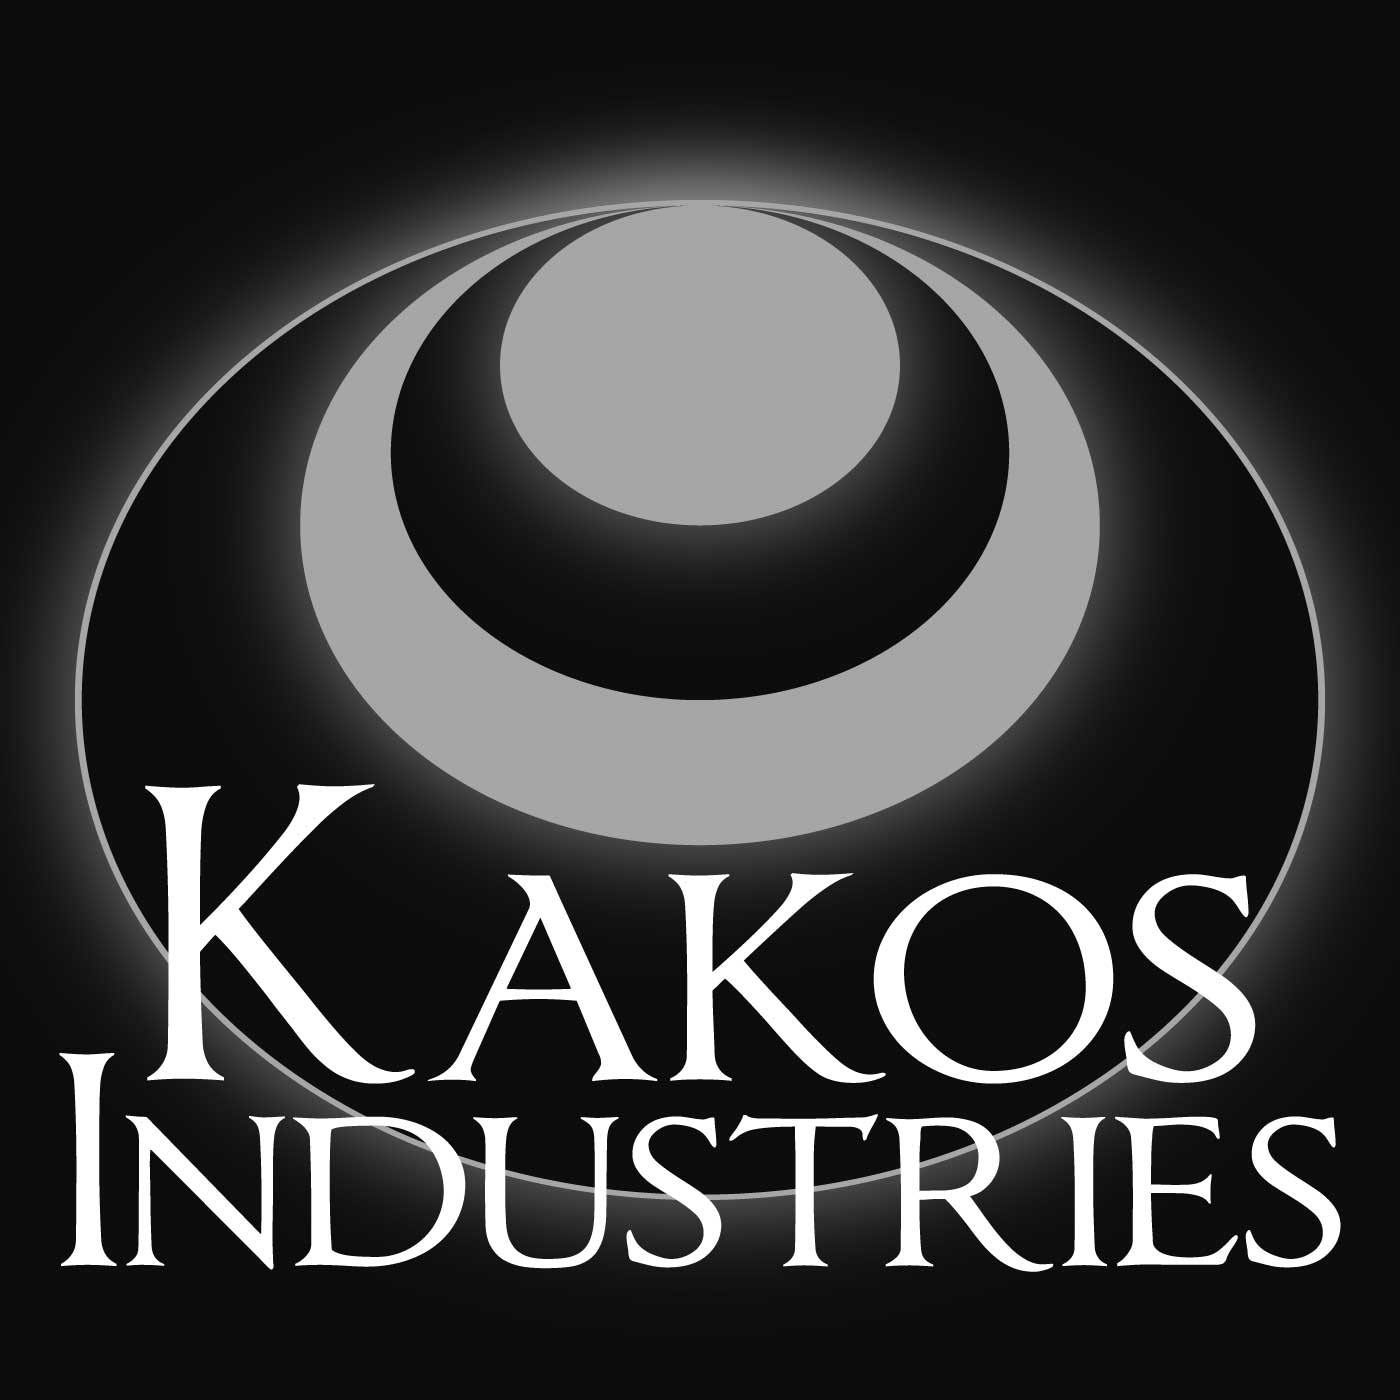 Presenting: Kakos Industries